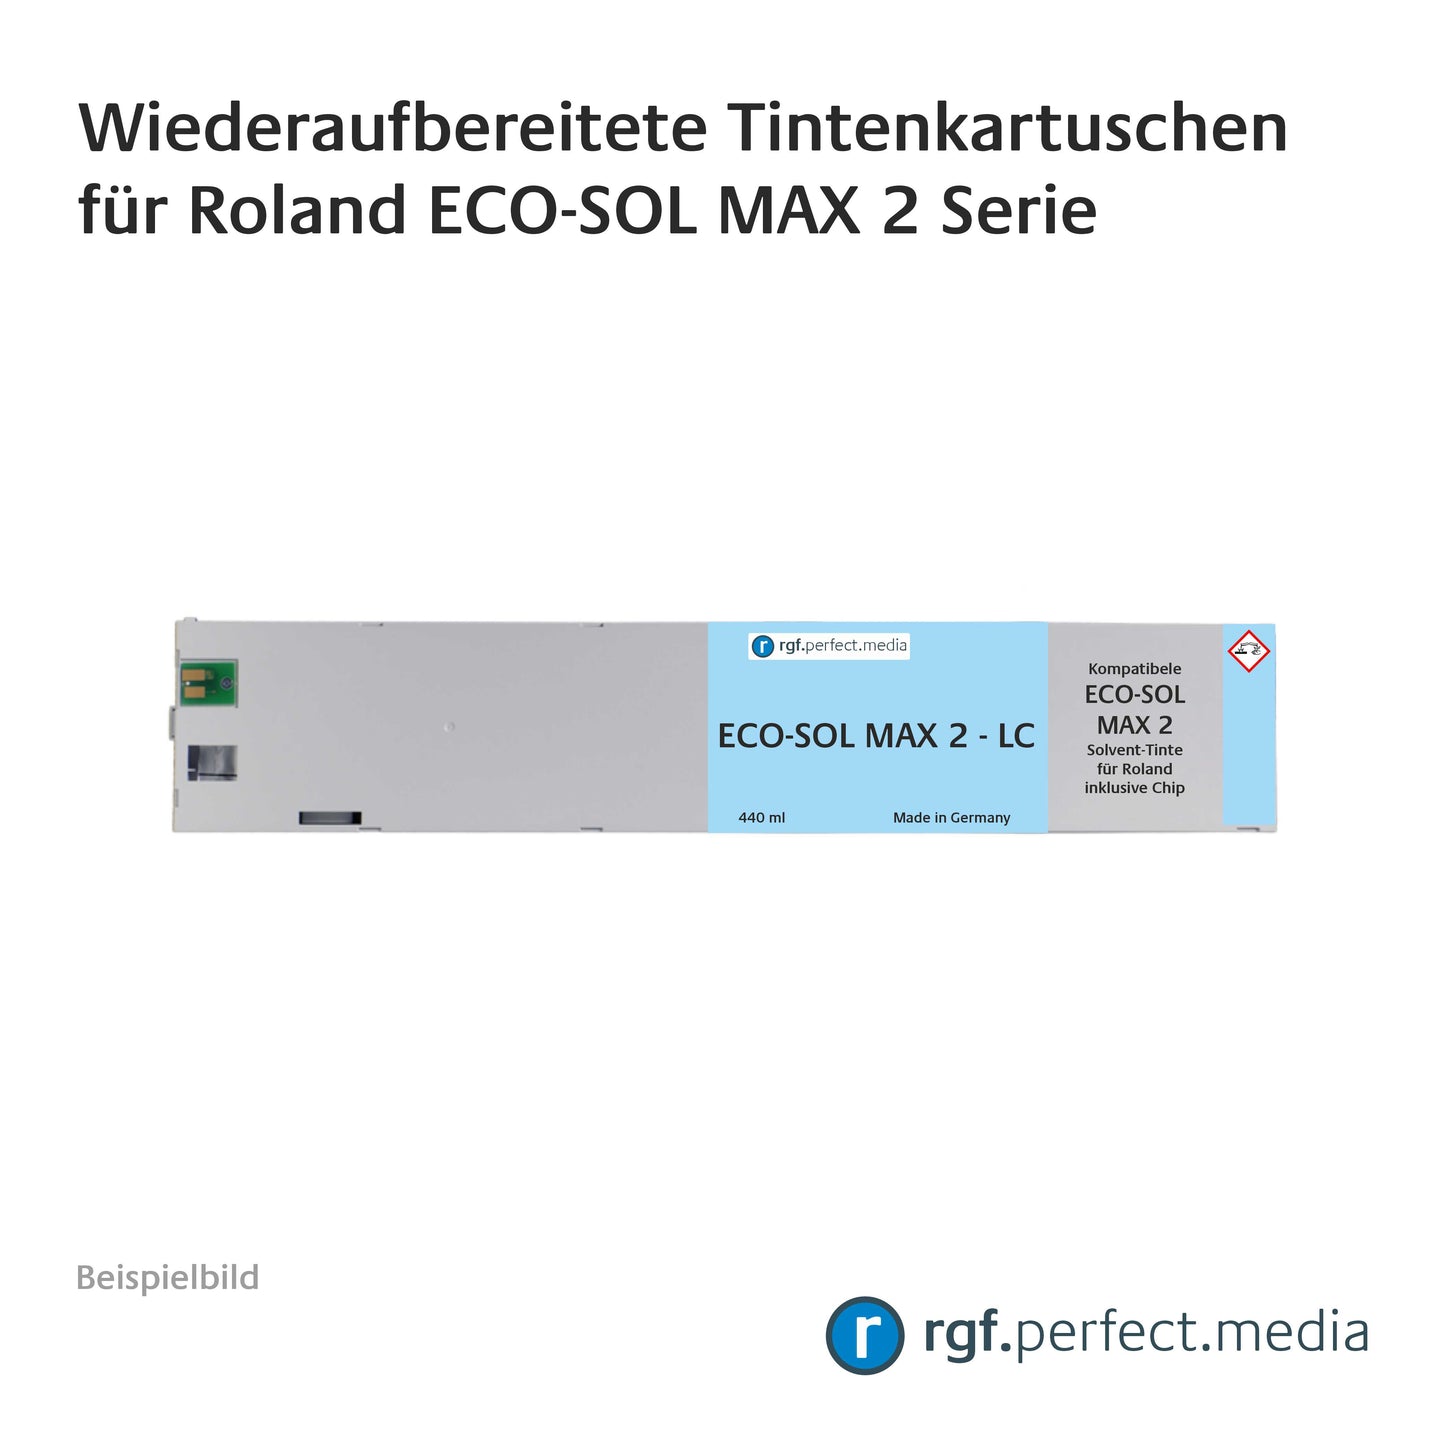 Wiederaufbereitete Tintenkartuschen kompatibel für Roland ECO-SOL MAX 2 Serie